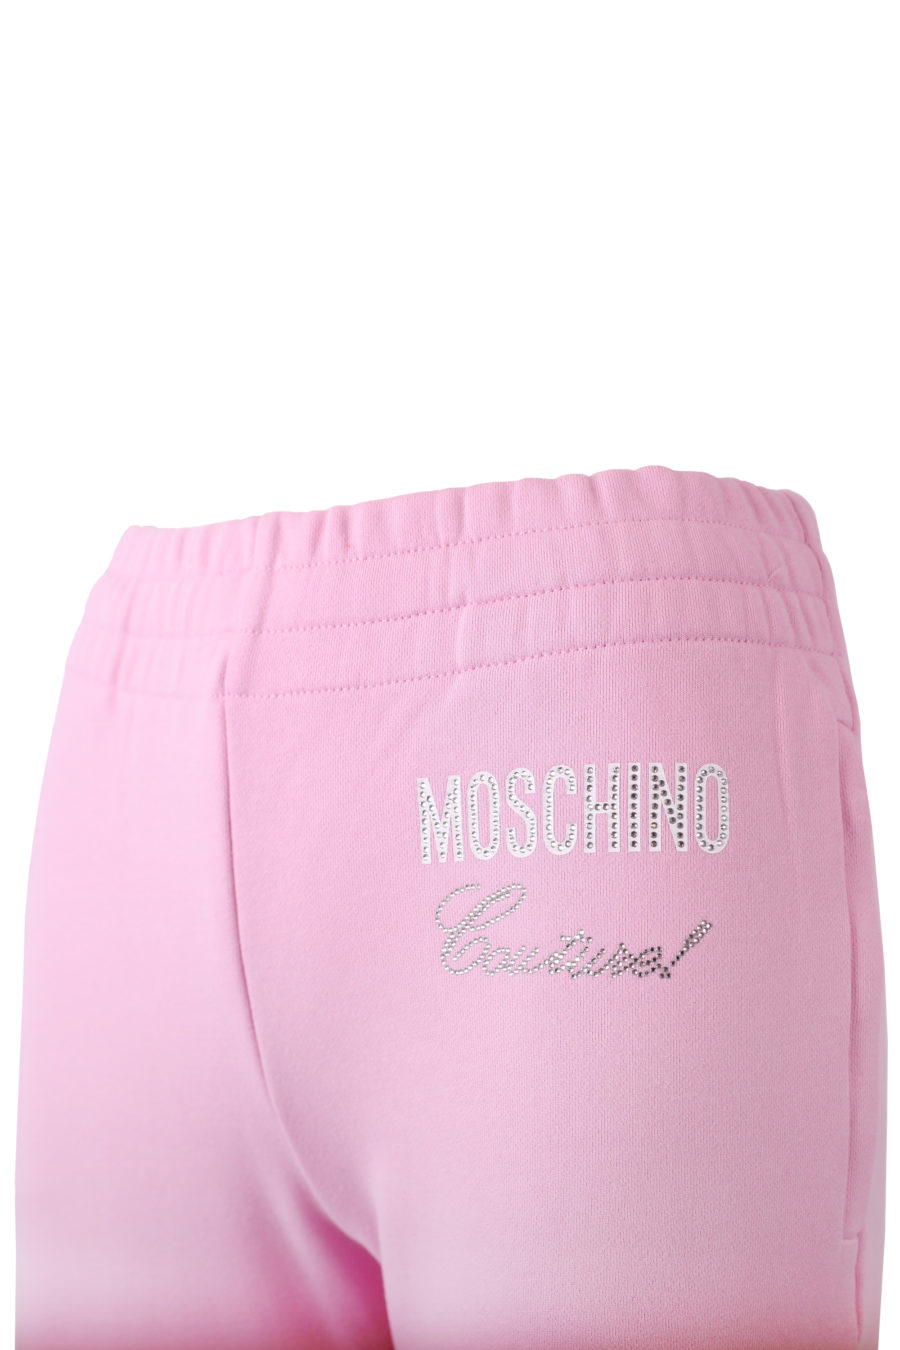 Pantalon rose avec logo en cristaux - copie IMG 7285